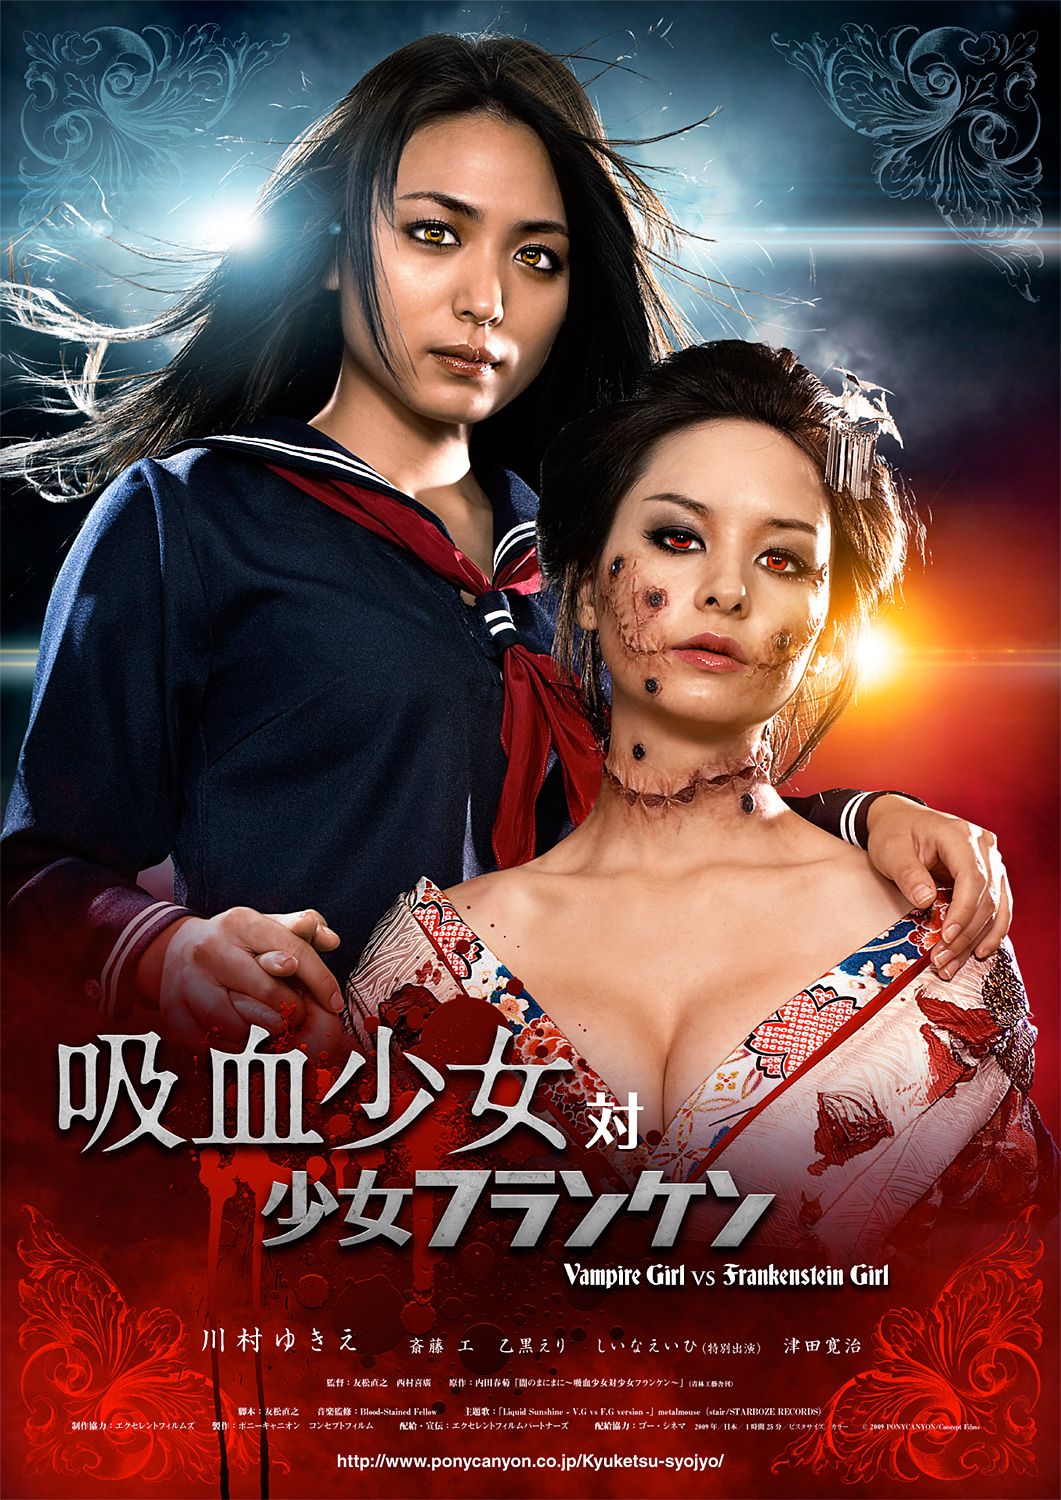 Extra Large Movie Poster Image for Vampire Girl vs. Frankenstein Girl (#3 of 3)